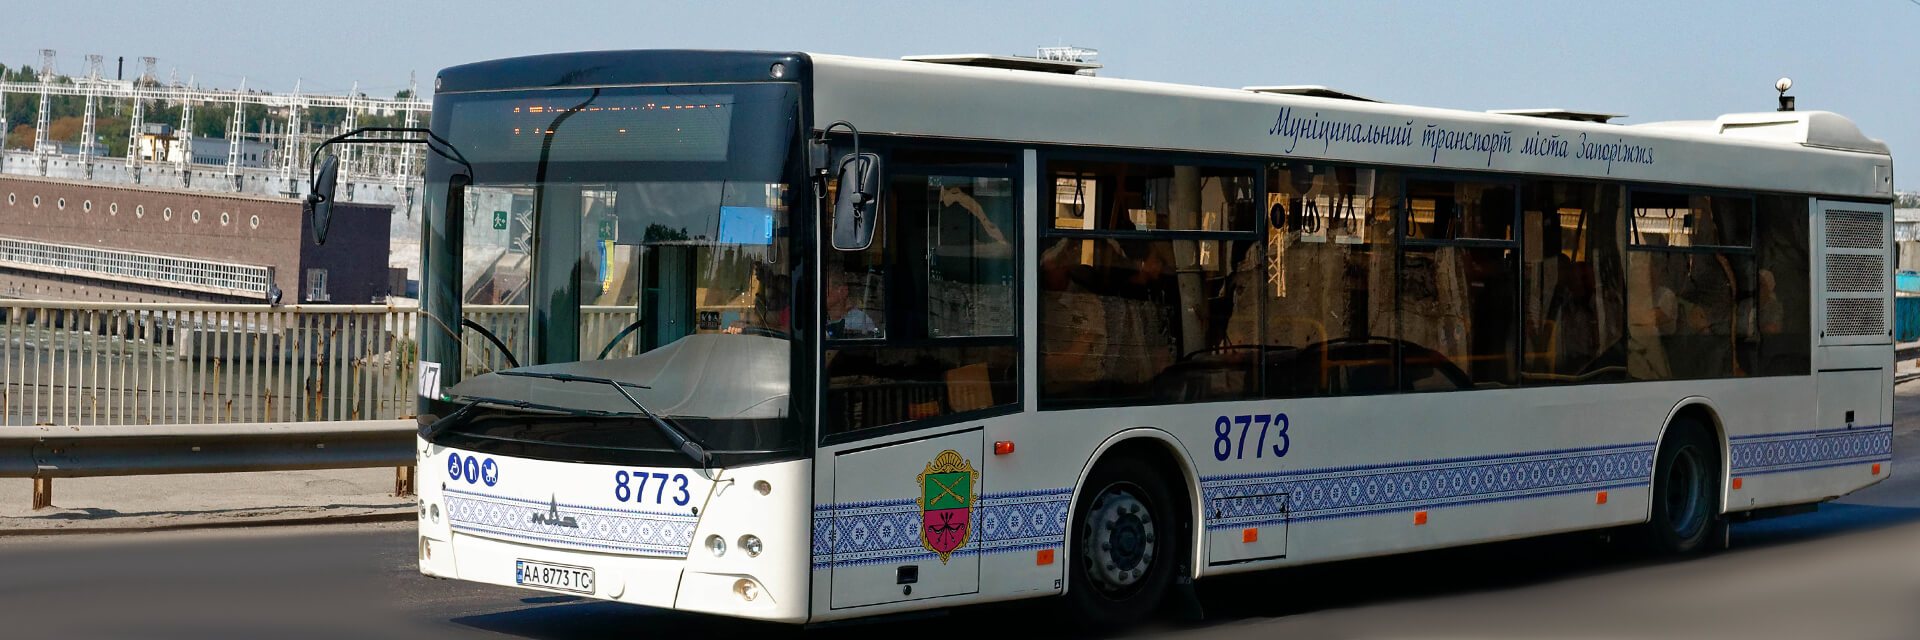 Жители Запорожья не платят за проезд в коммунальном транспорте: депутаты требуют увеличить количество контролеров